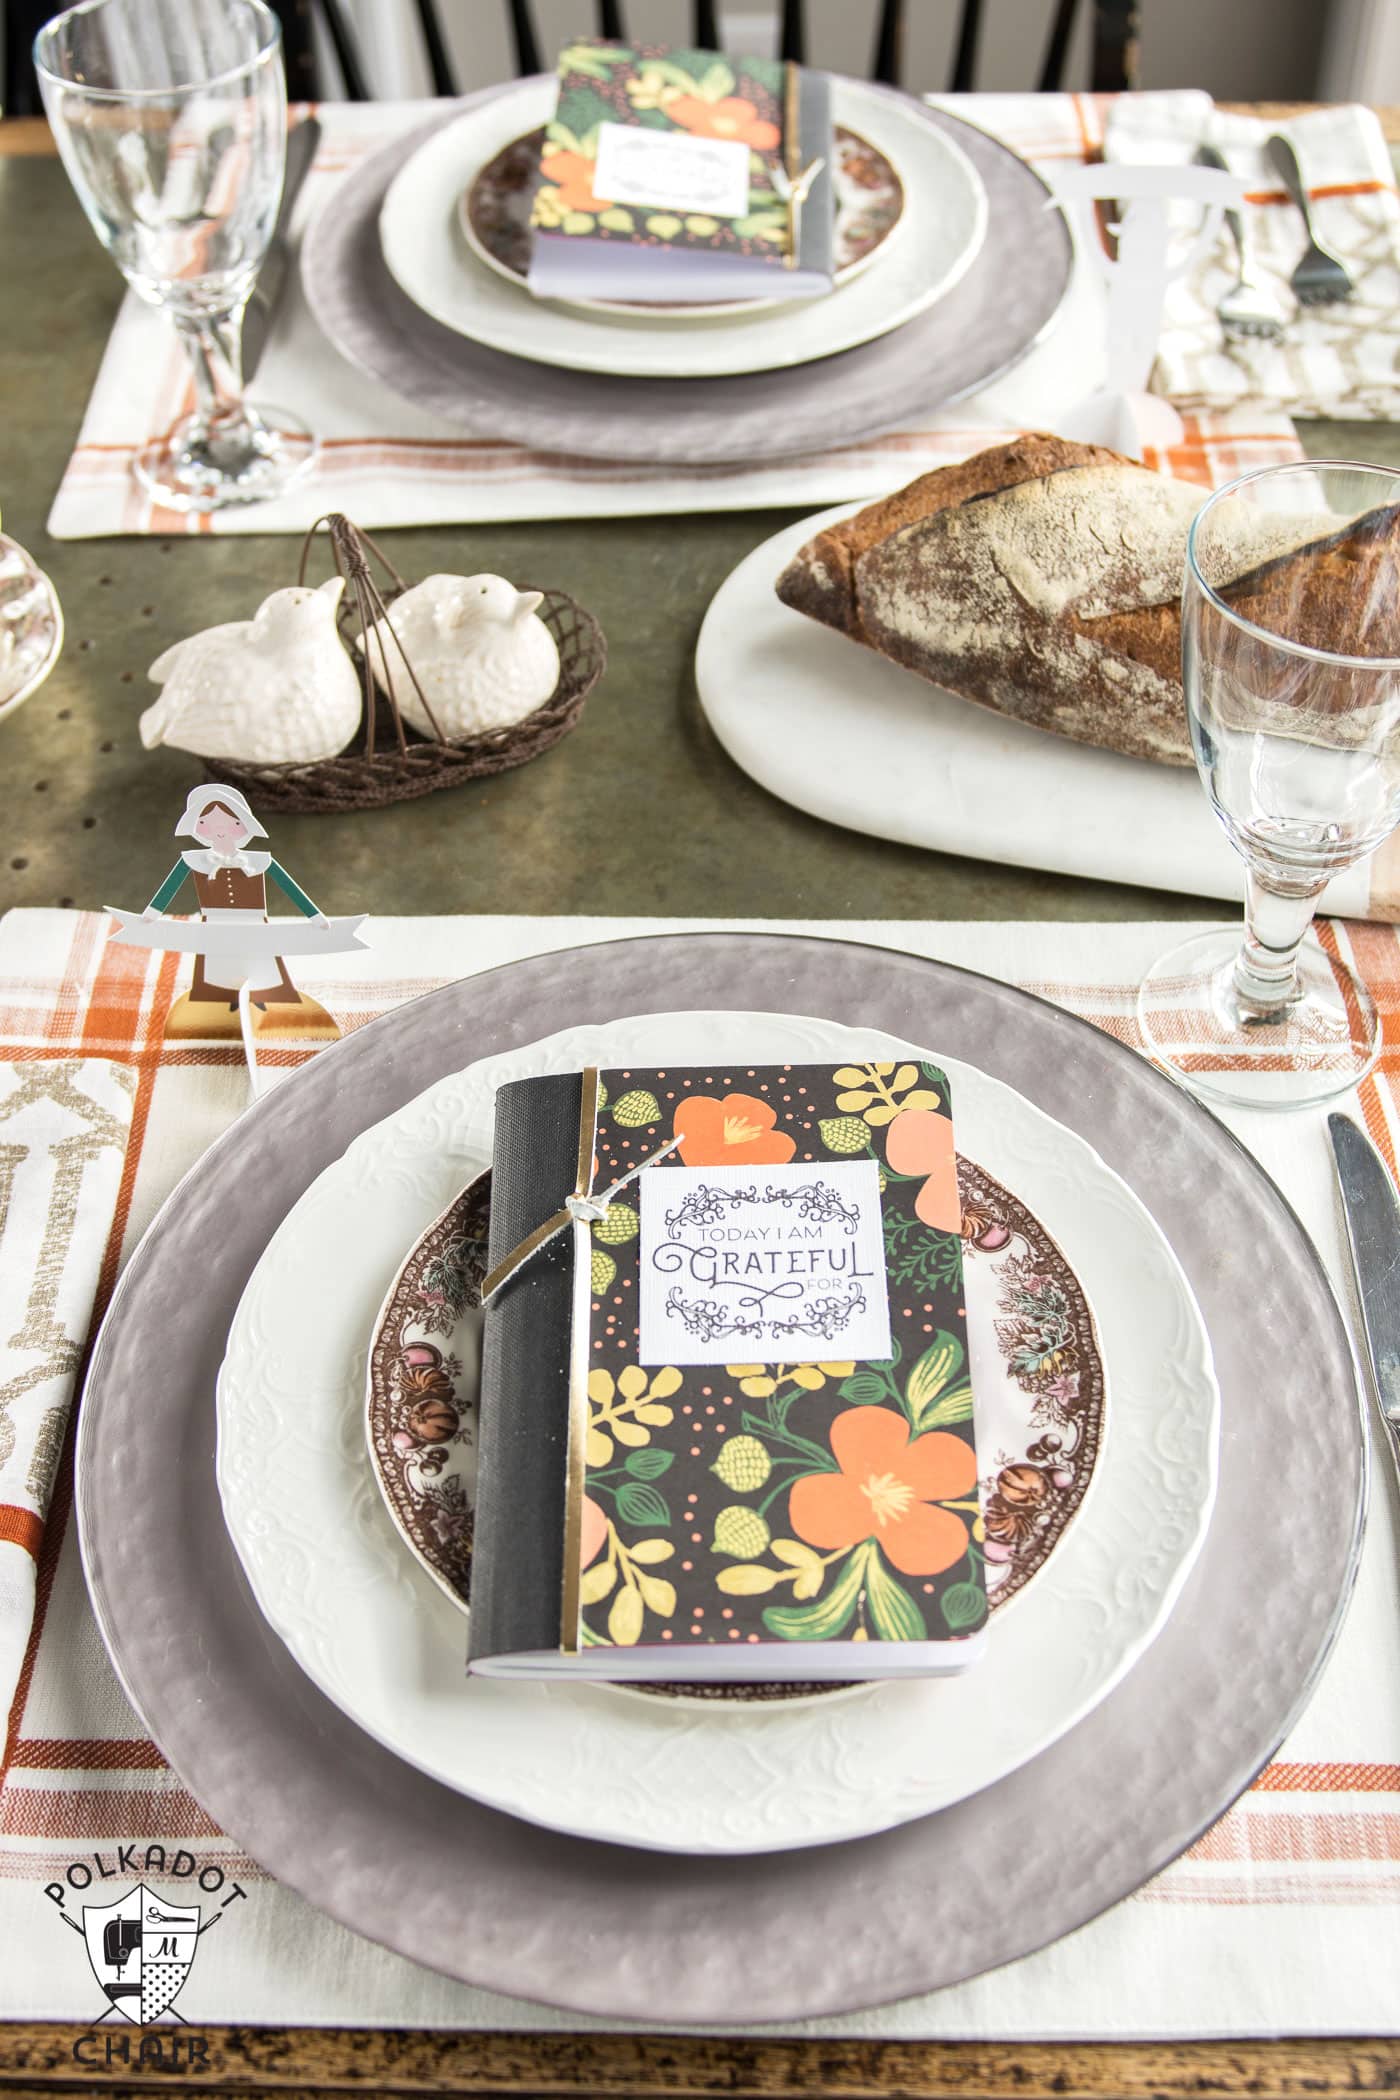 Journal de gratitude DIY pour Thanksgiving, j'adore l'idée de les disposer sur la table du dîner de Thanksgiving (ce serait également idéal à utiliser toute l'année)